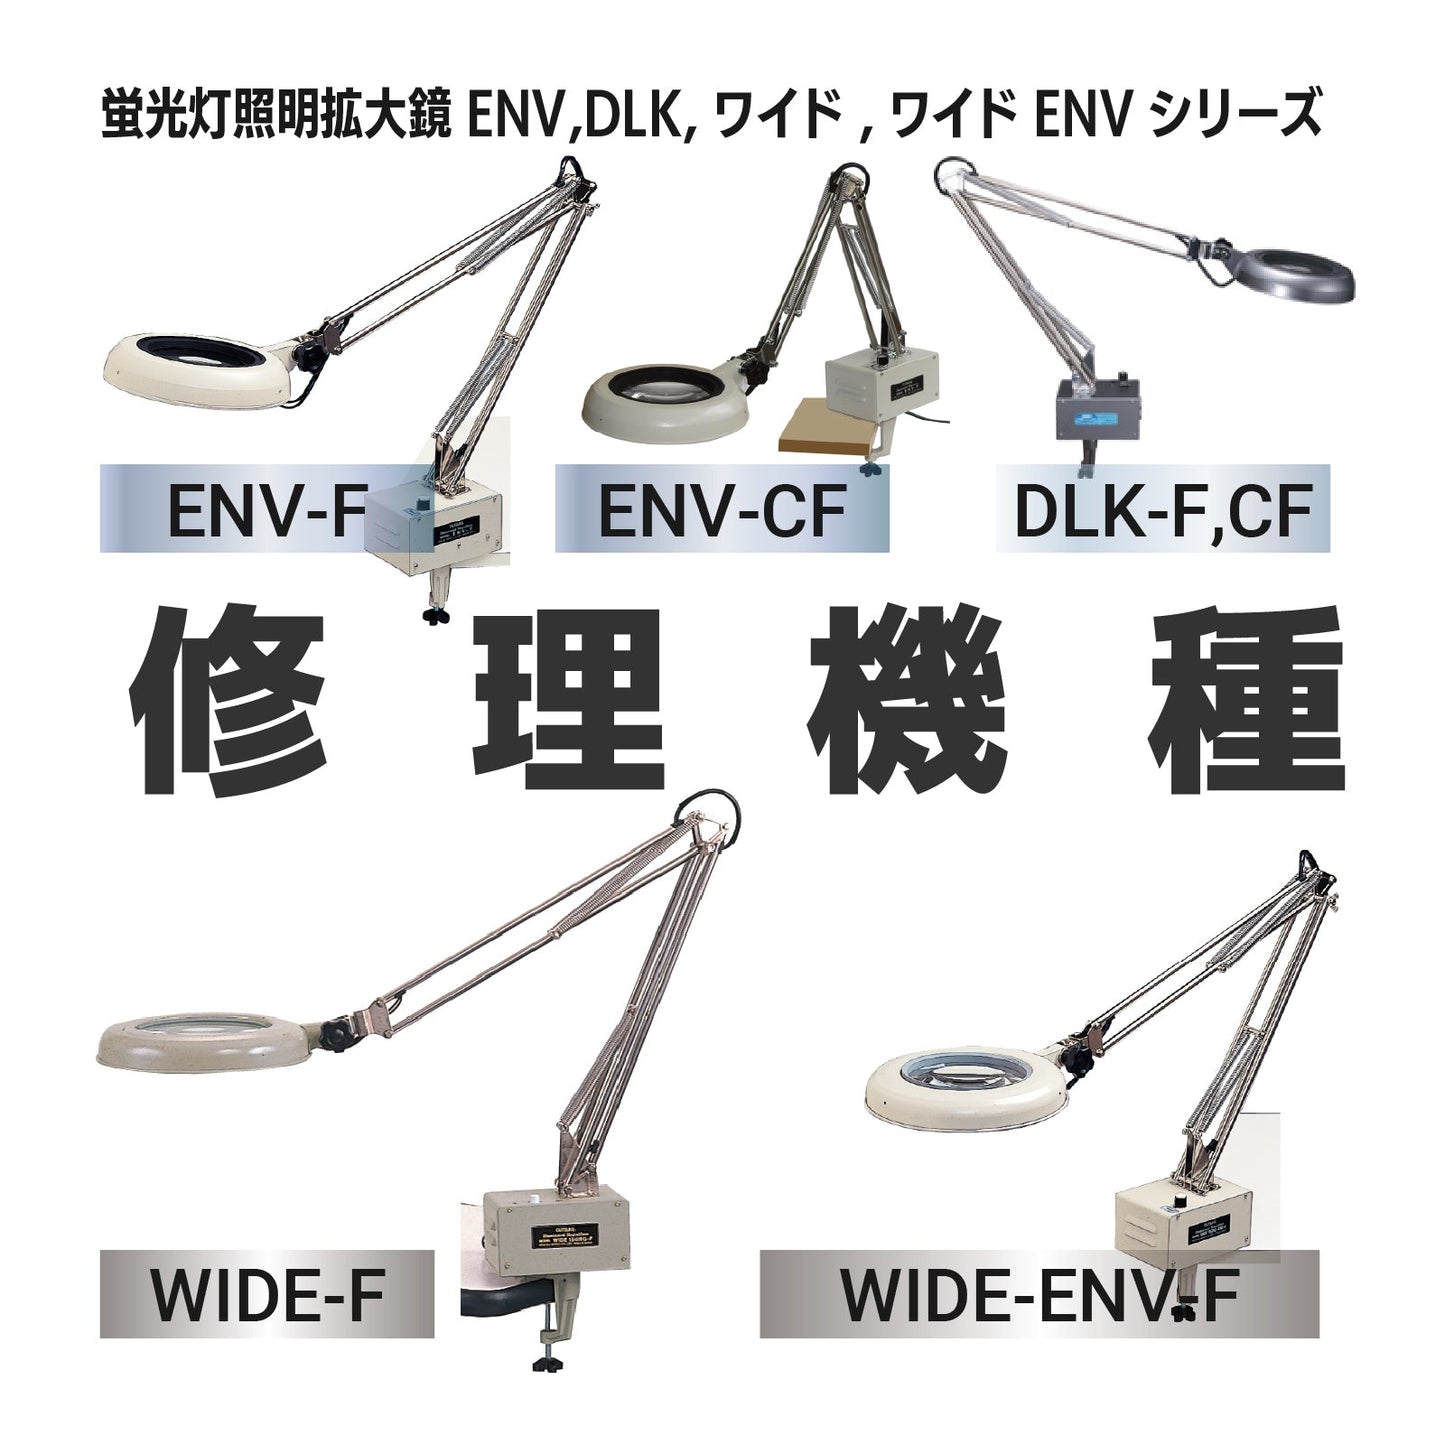 ENV series: ENV-F,CF / DLK series: DLK-F,CF / Wide-F/Wide-ENV-F series: Wide-F, Wide-ENV-F